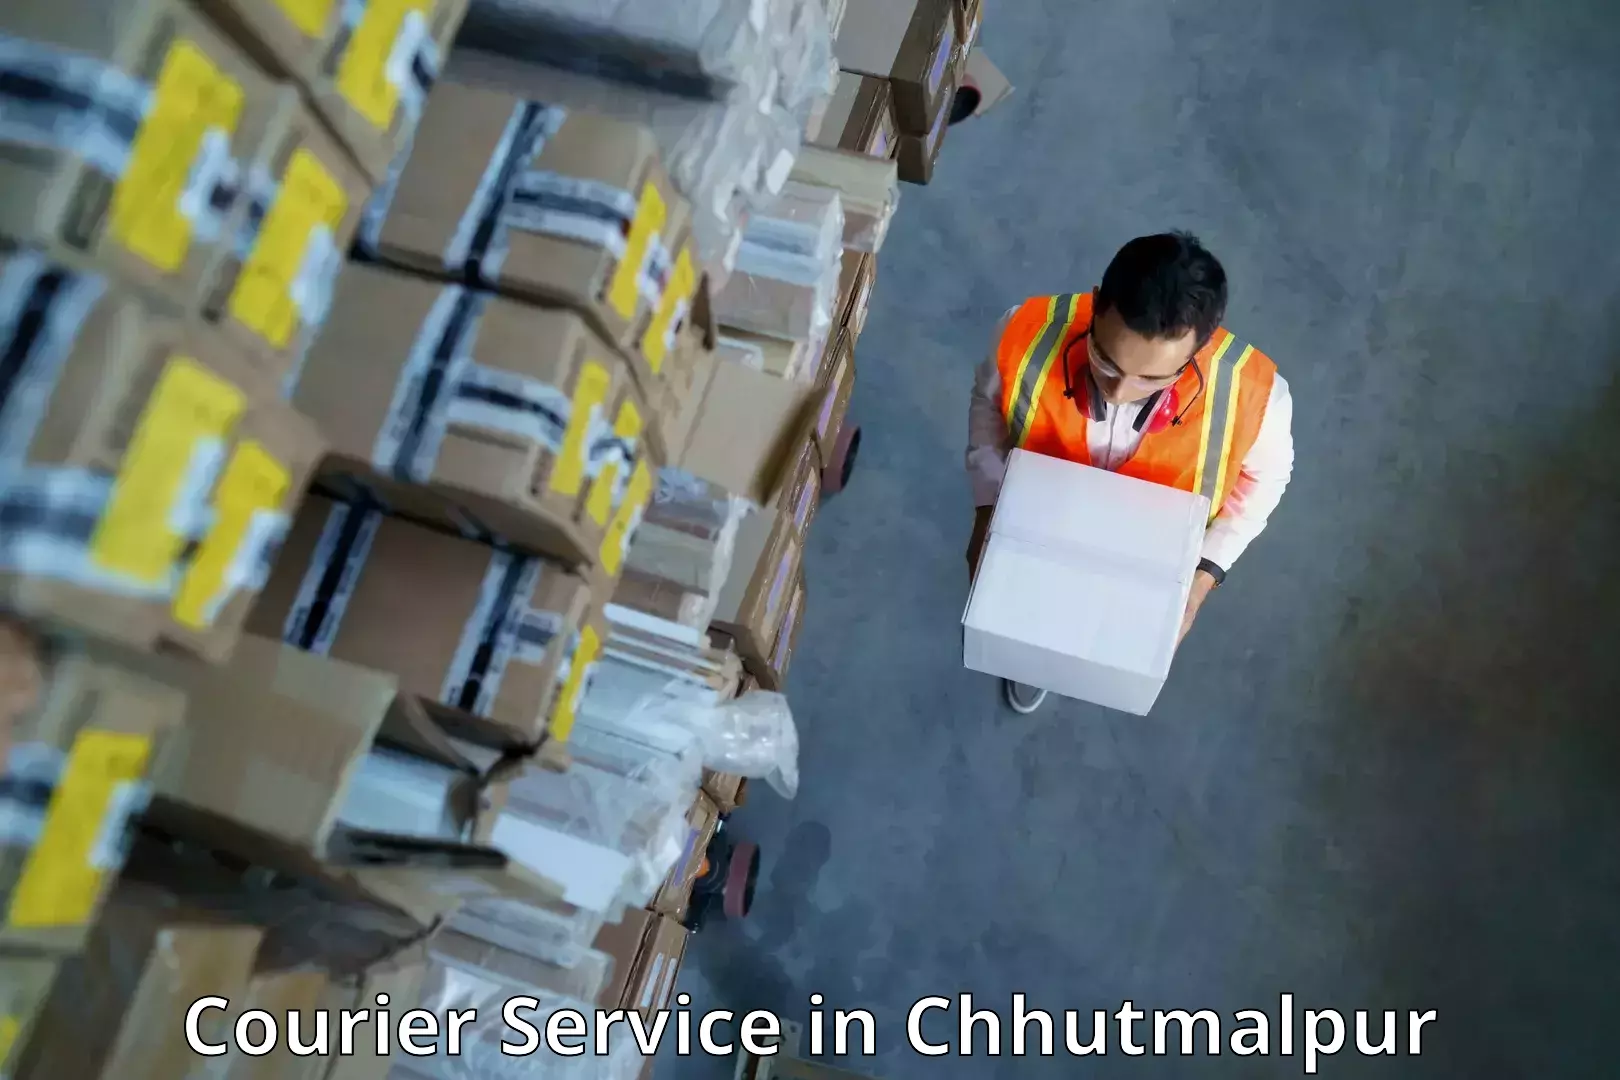 Scheduled delivery in Chhutmalpur